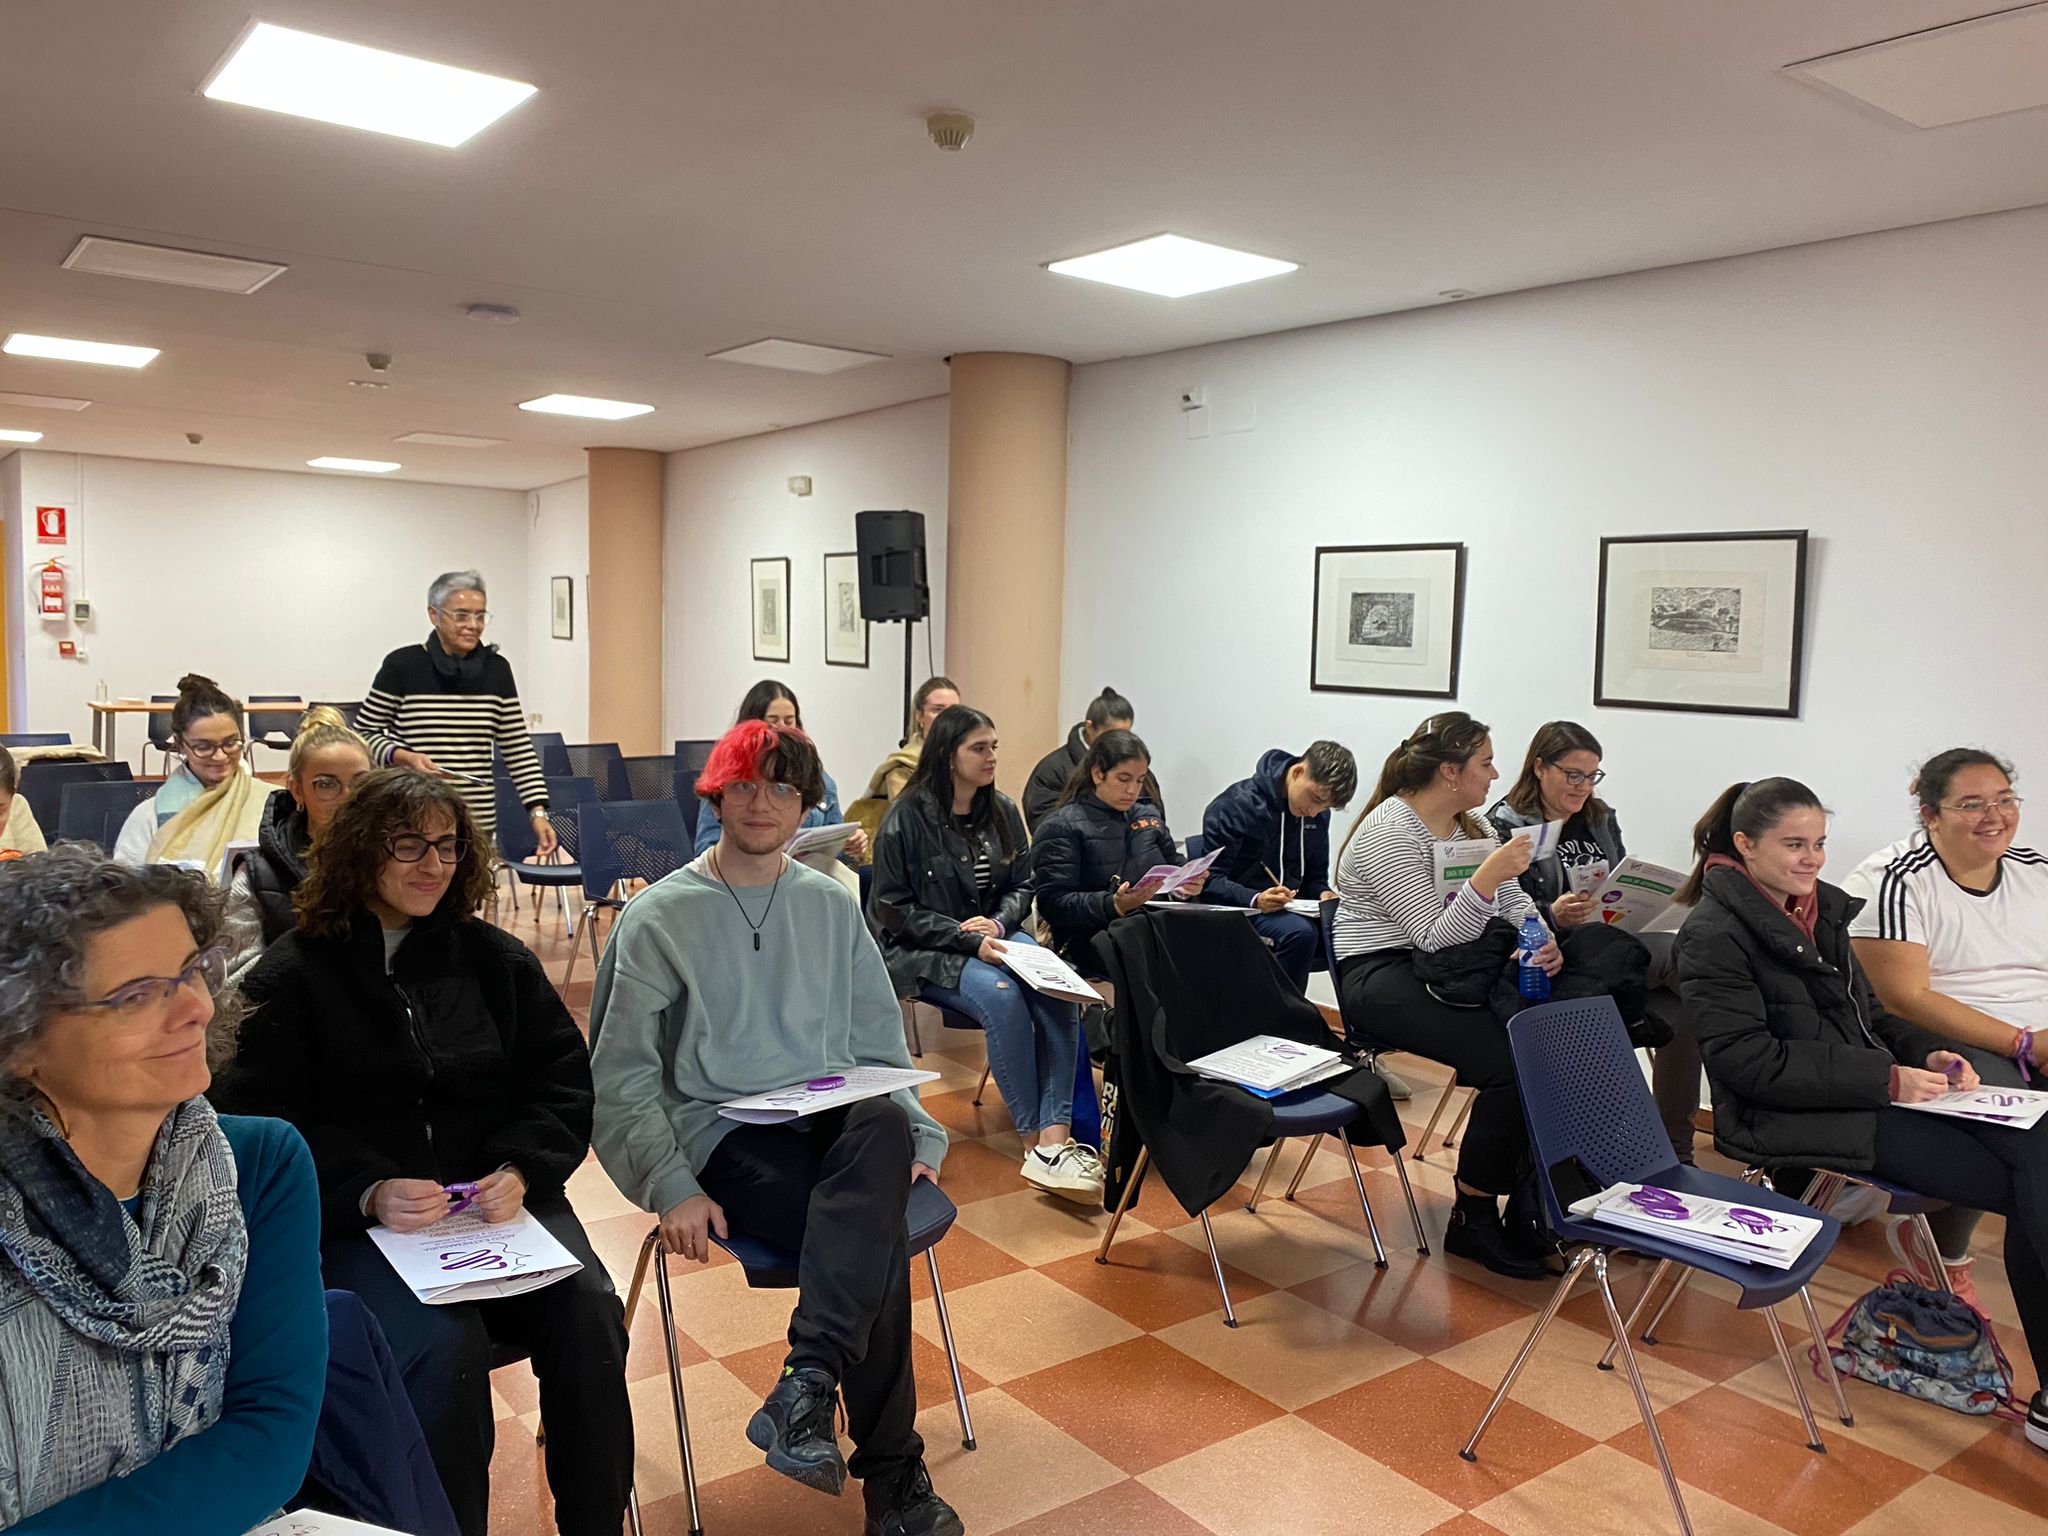 Este pasado viernes (18/11/22) se ha impartido una charla informativa a alumnos del grado superior de educación infantil del IES Santa Eulalia de Mérida